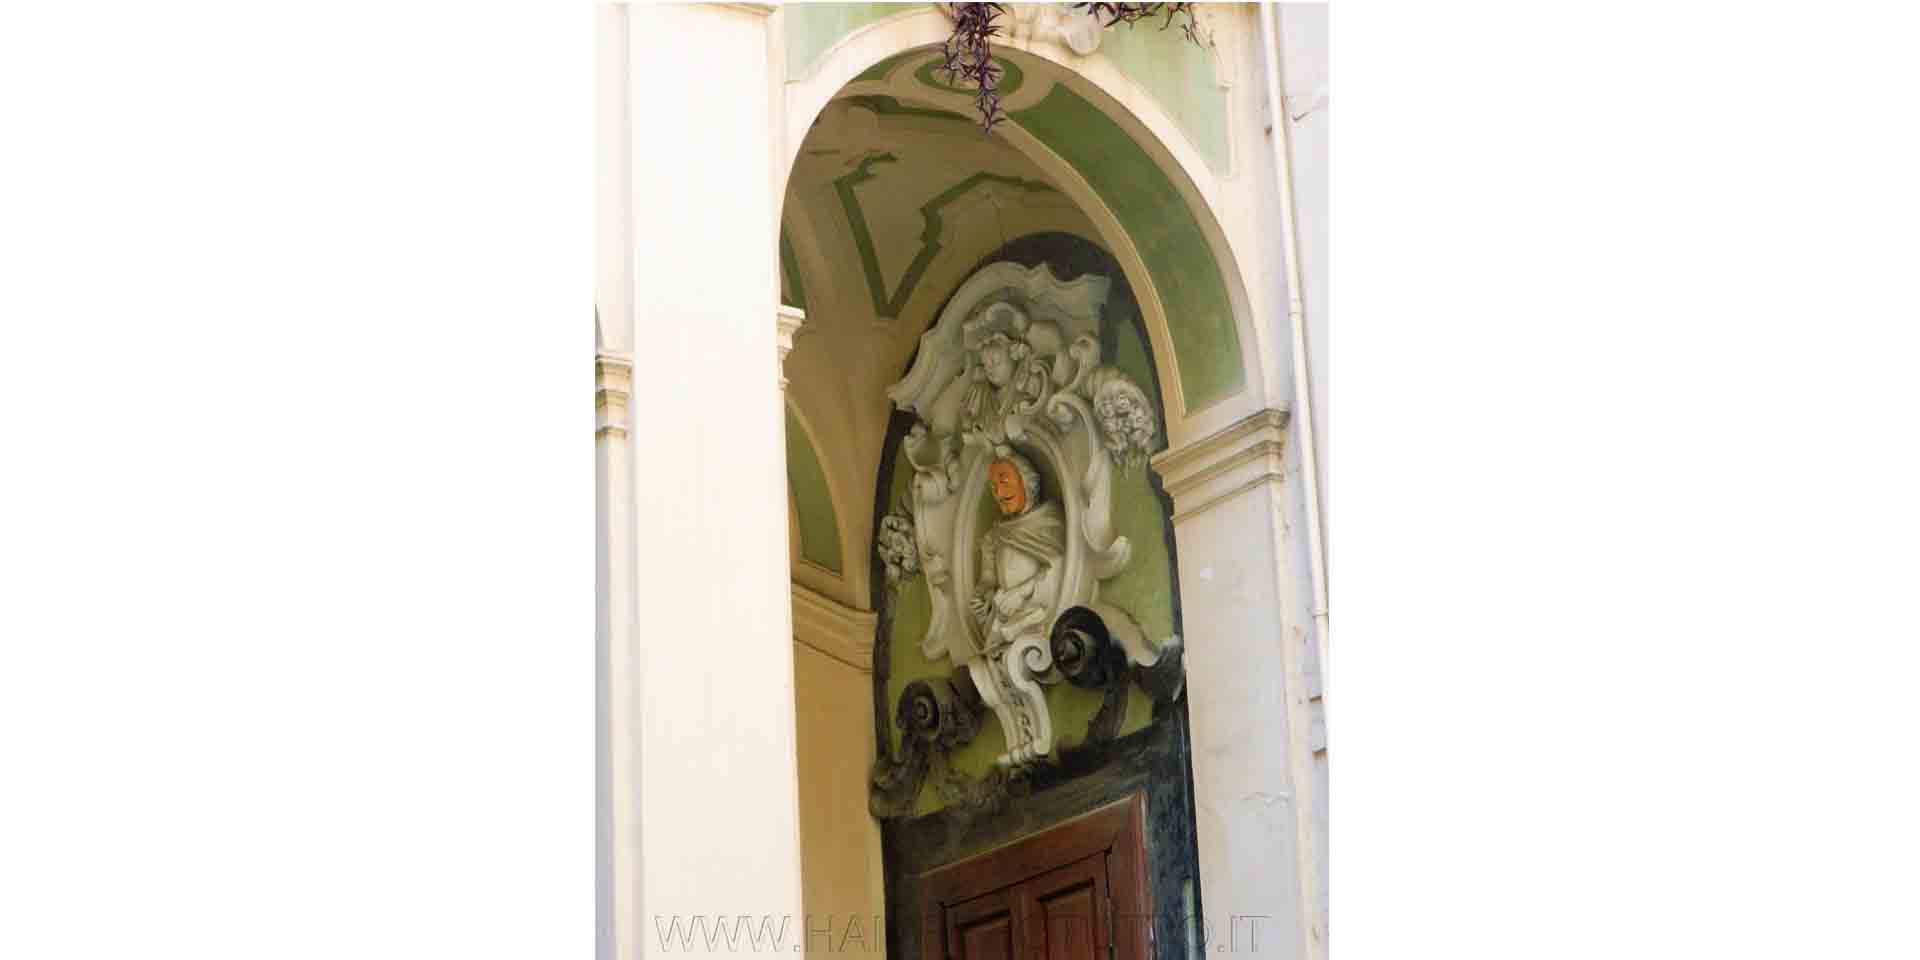 palazzo dello Spagnuolo set anche di importanti film come Giudizio Universale e Piedone lo Sbirro è inoltre decorato da stucchi in stile barocco